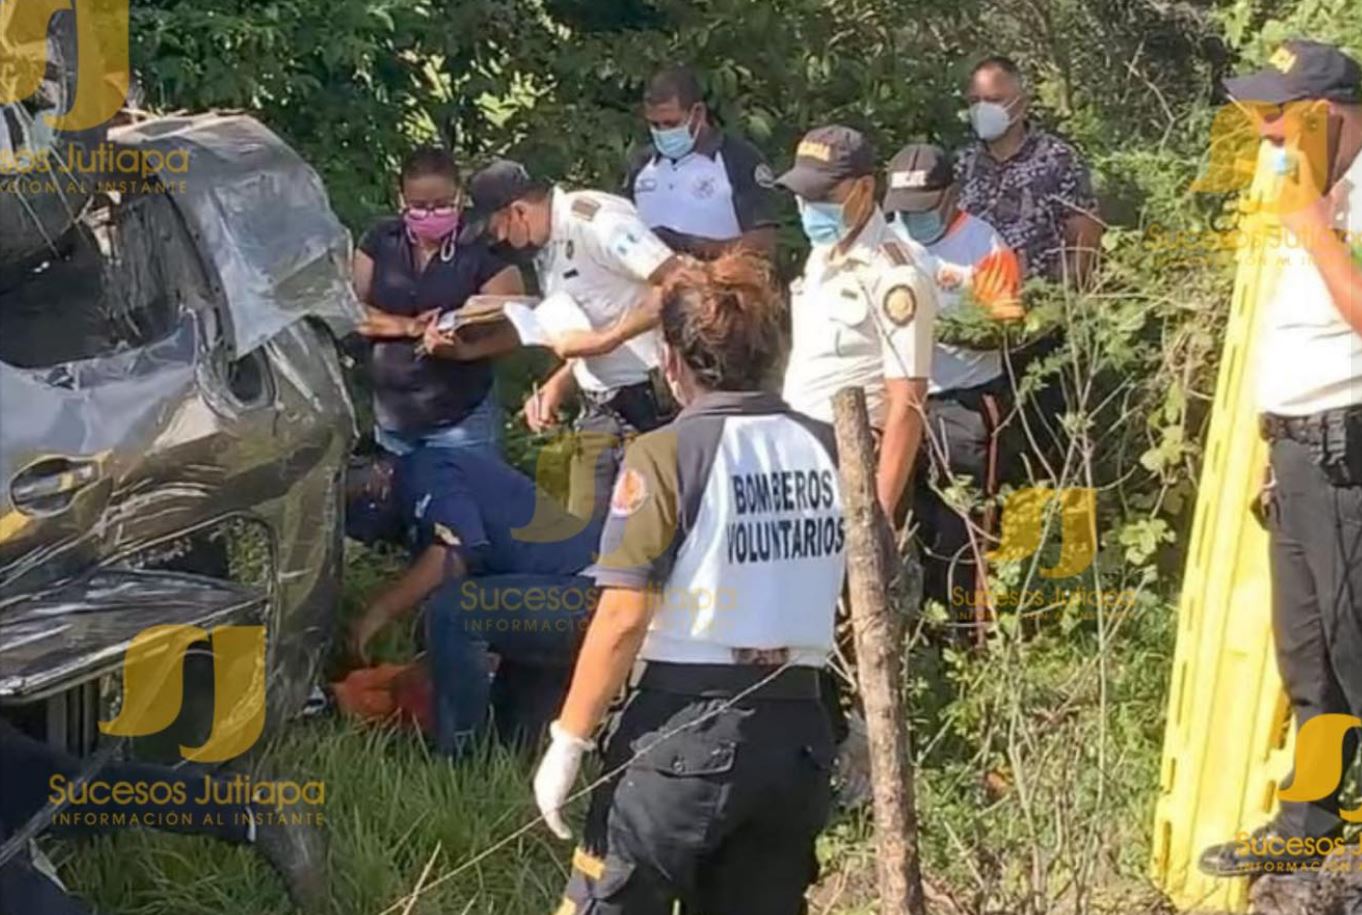 Vehículo en el que se accidentó el alcalde de Quesada, Jutiapa, Carlos Alberto Martínez Castellanos. (Foto Prensa Libre: Sucesos Jutiapa)